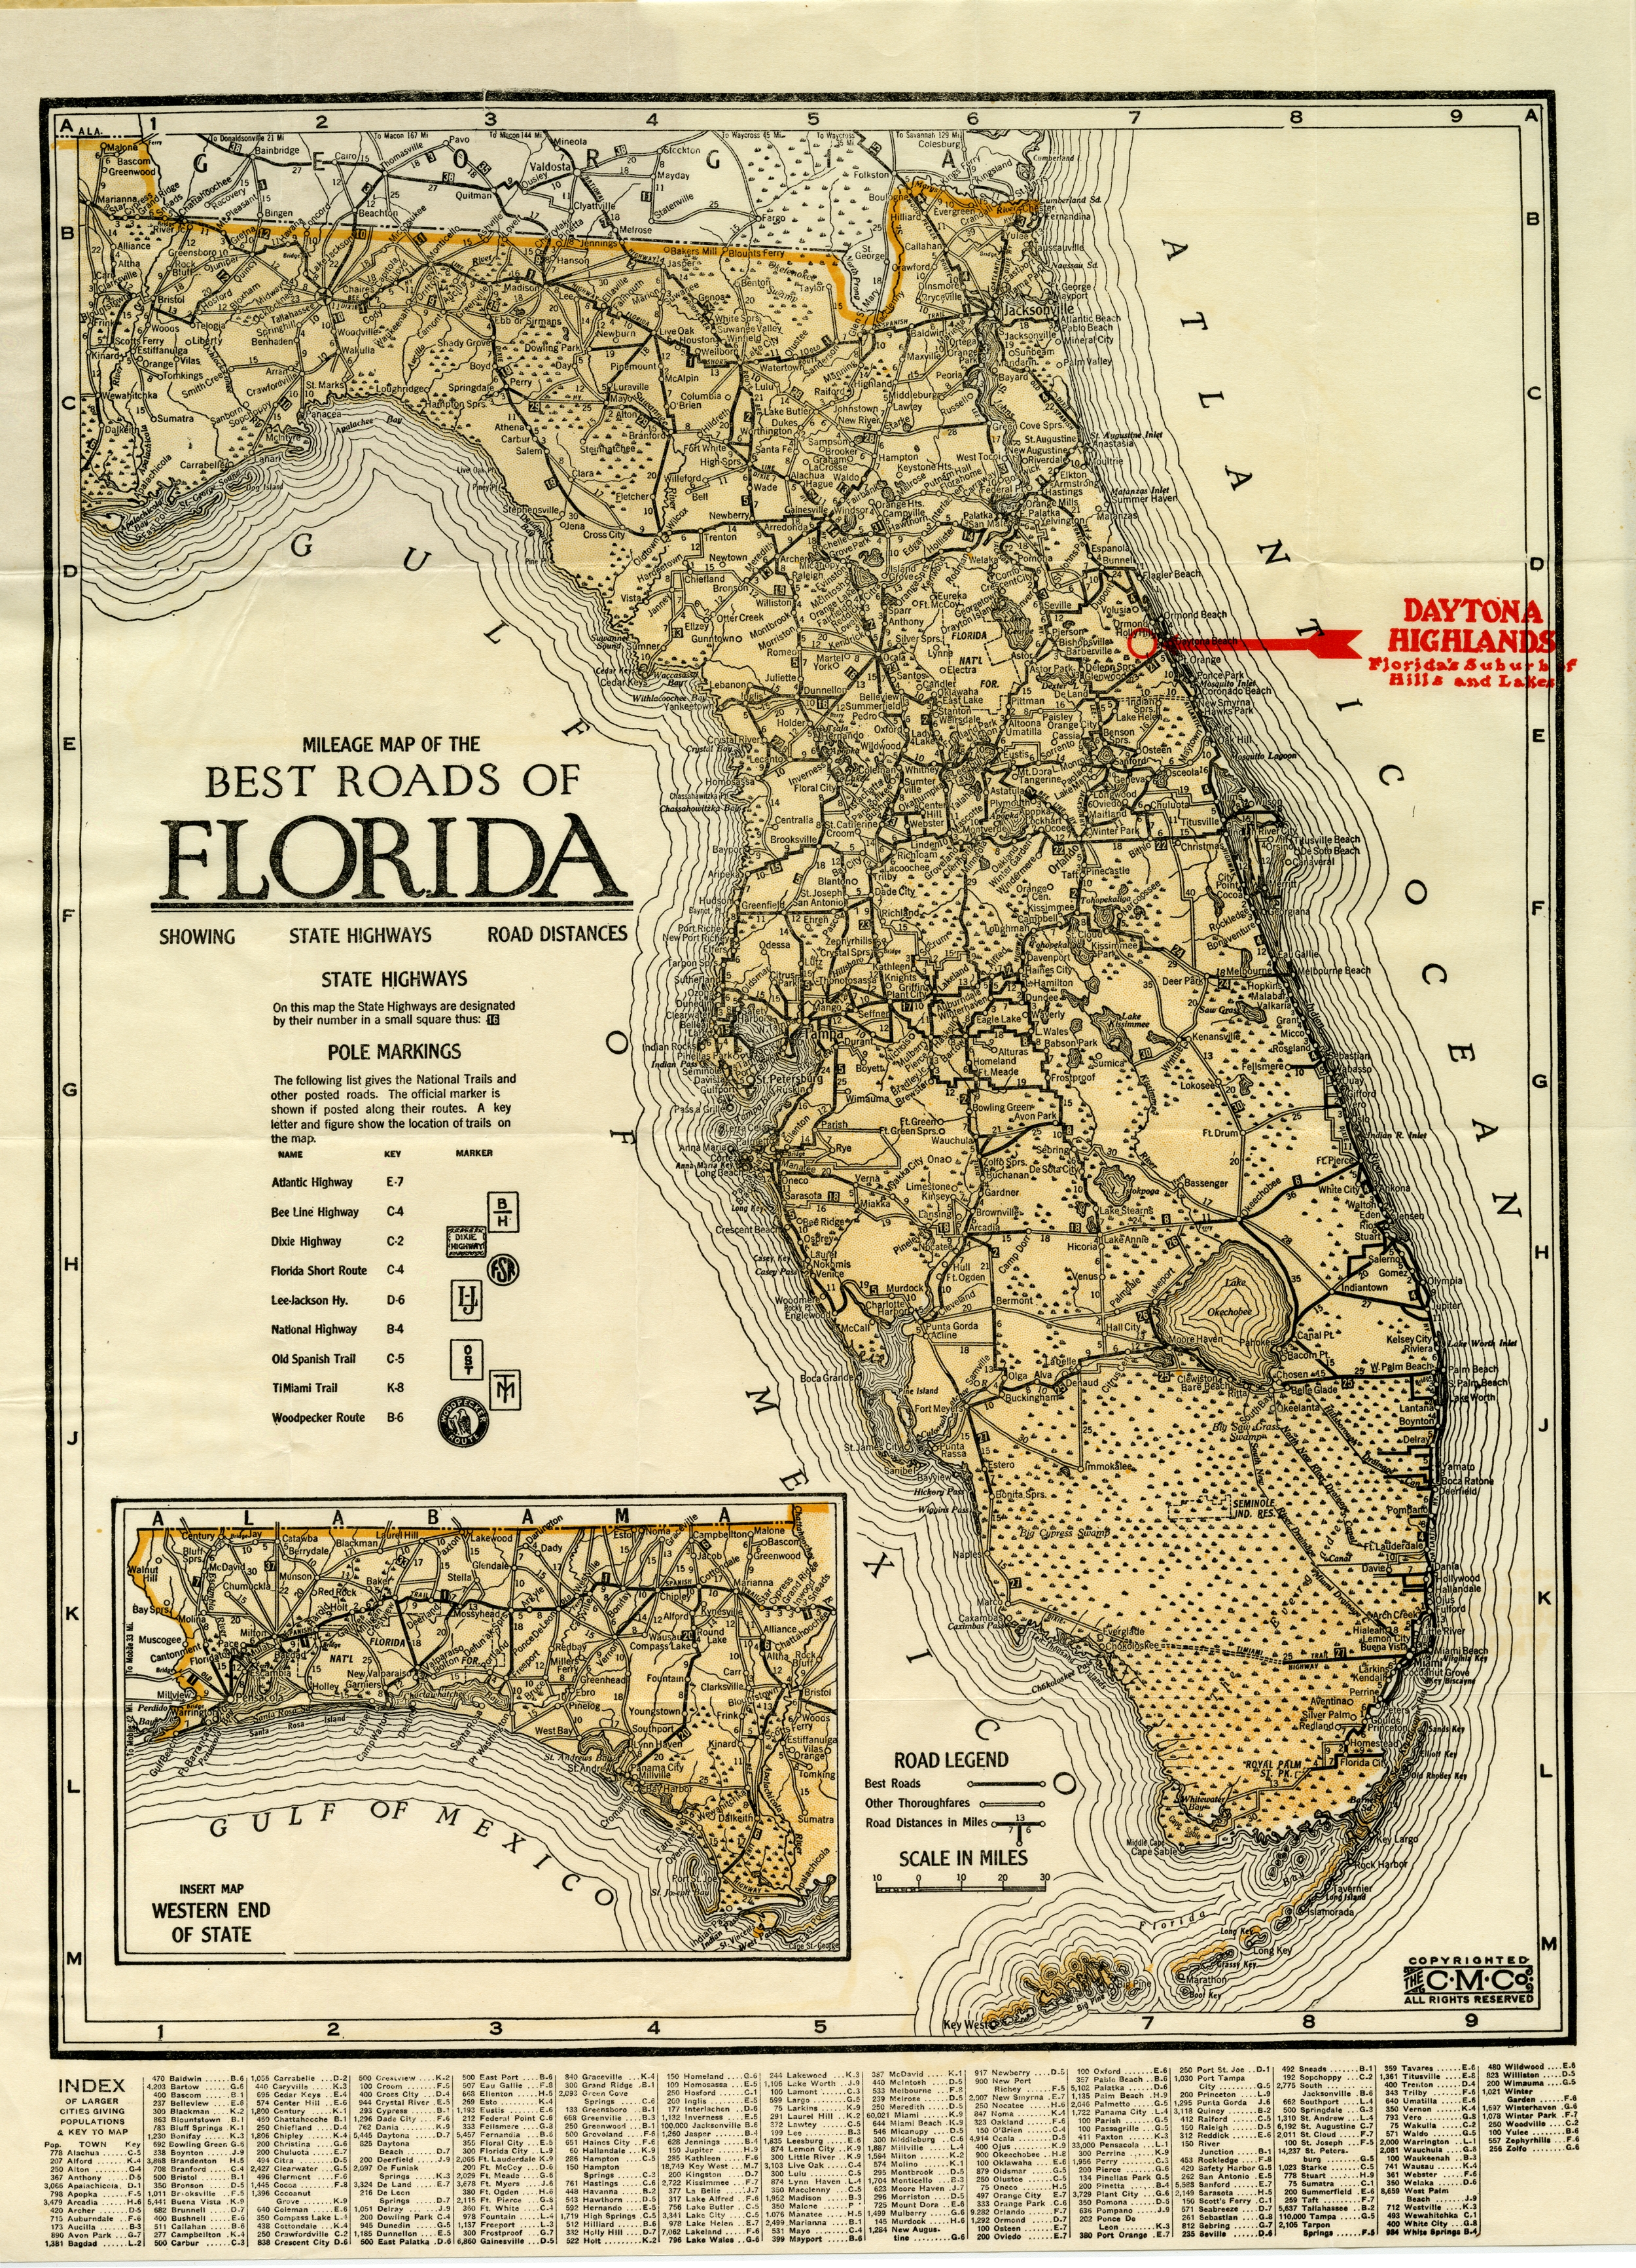 Best Roads of Florida, c. 1915